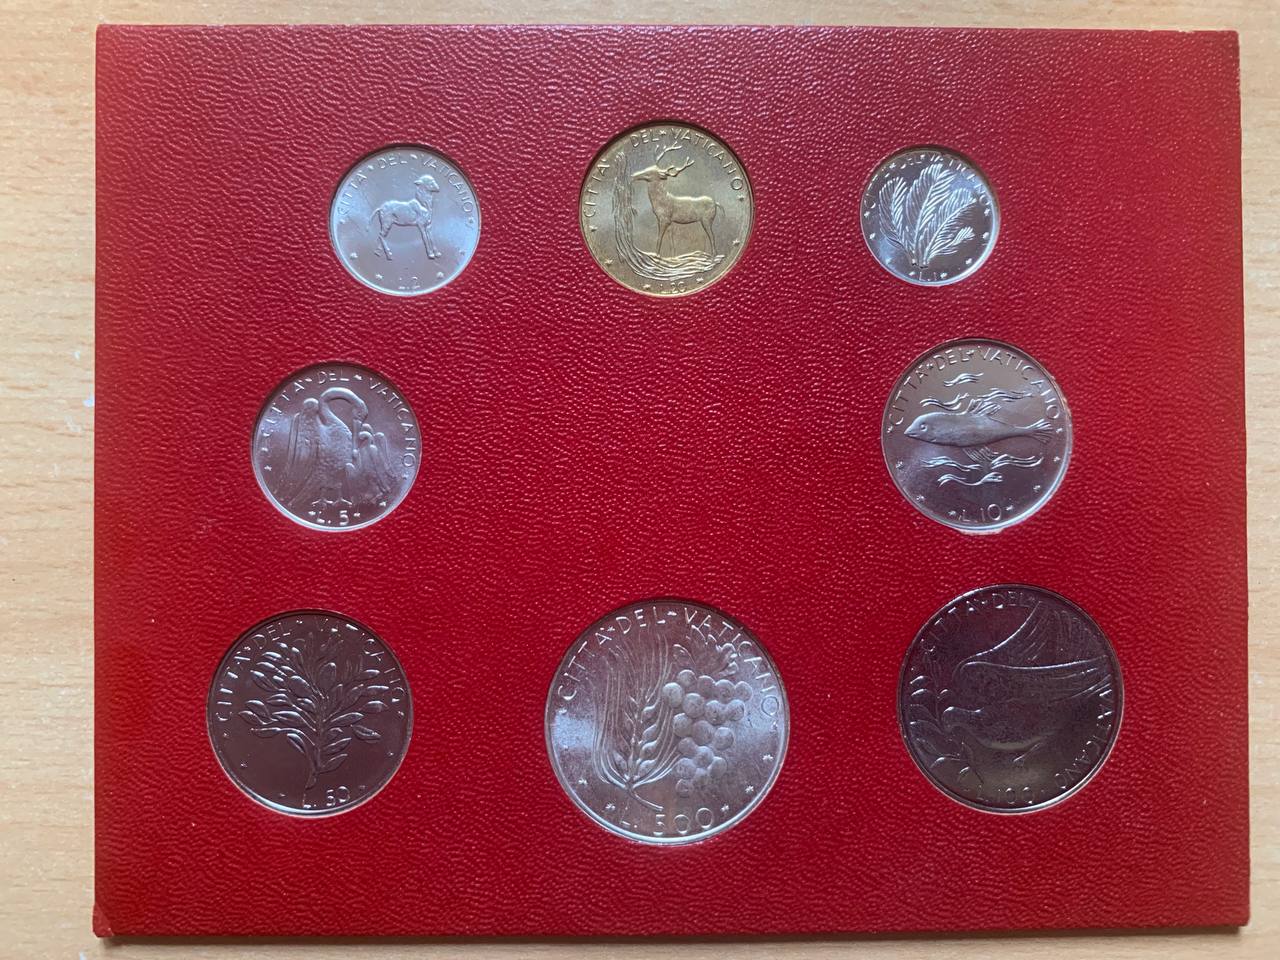  Jahresset von Vatikan 1974 BU (8 Münzen)   